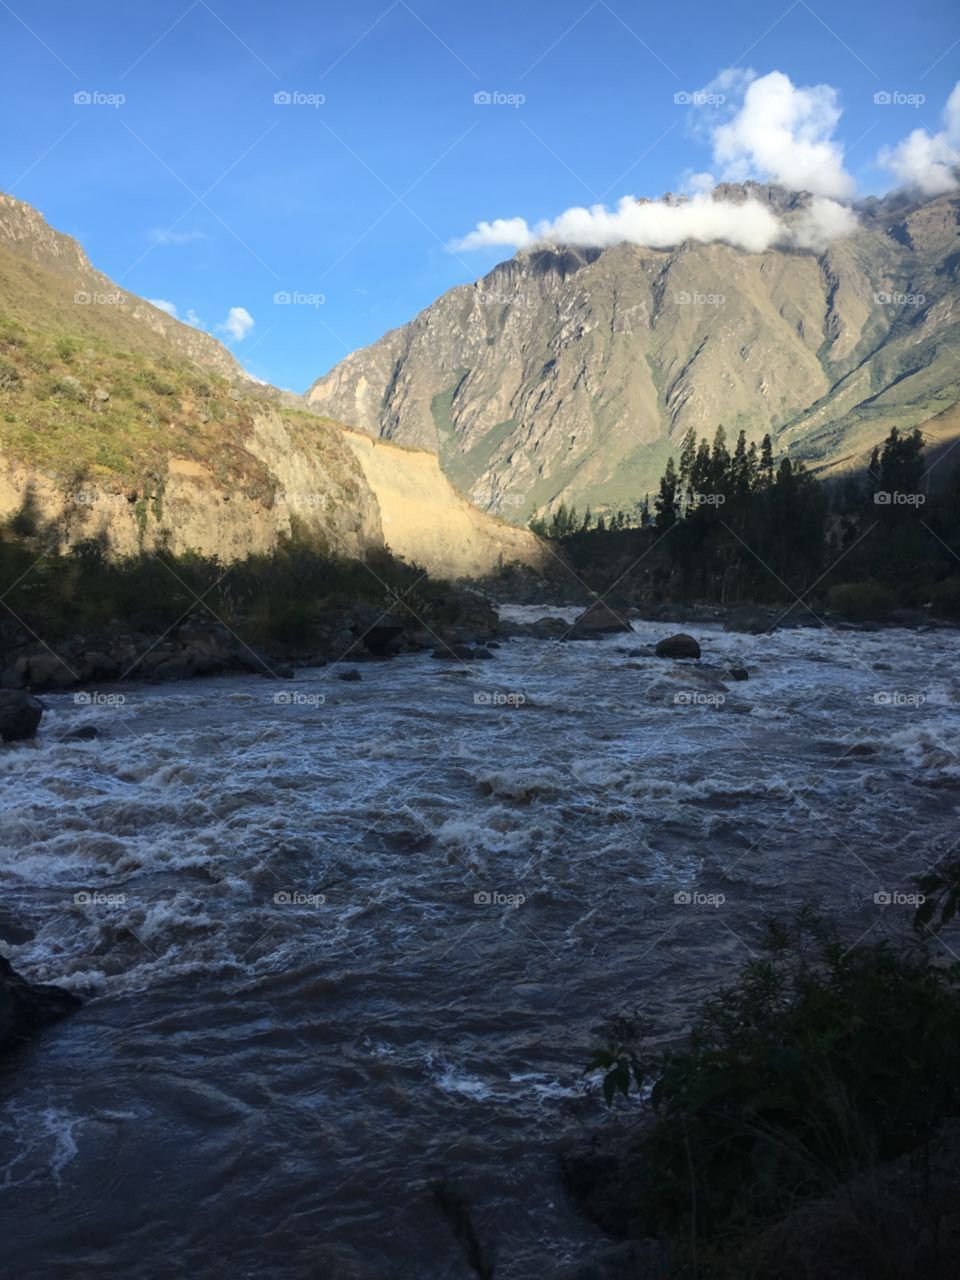 Peru  river